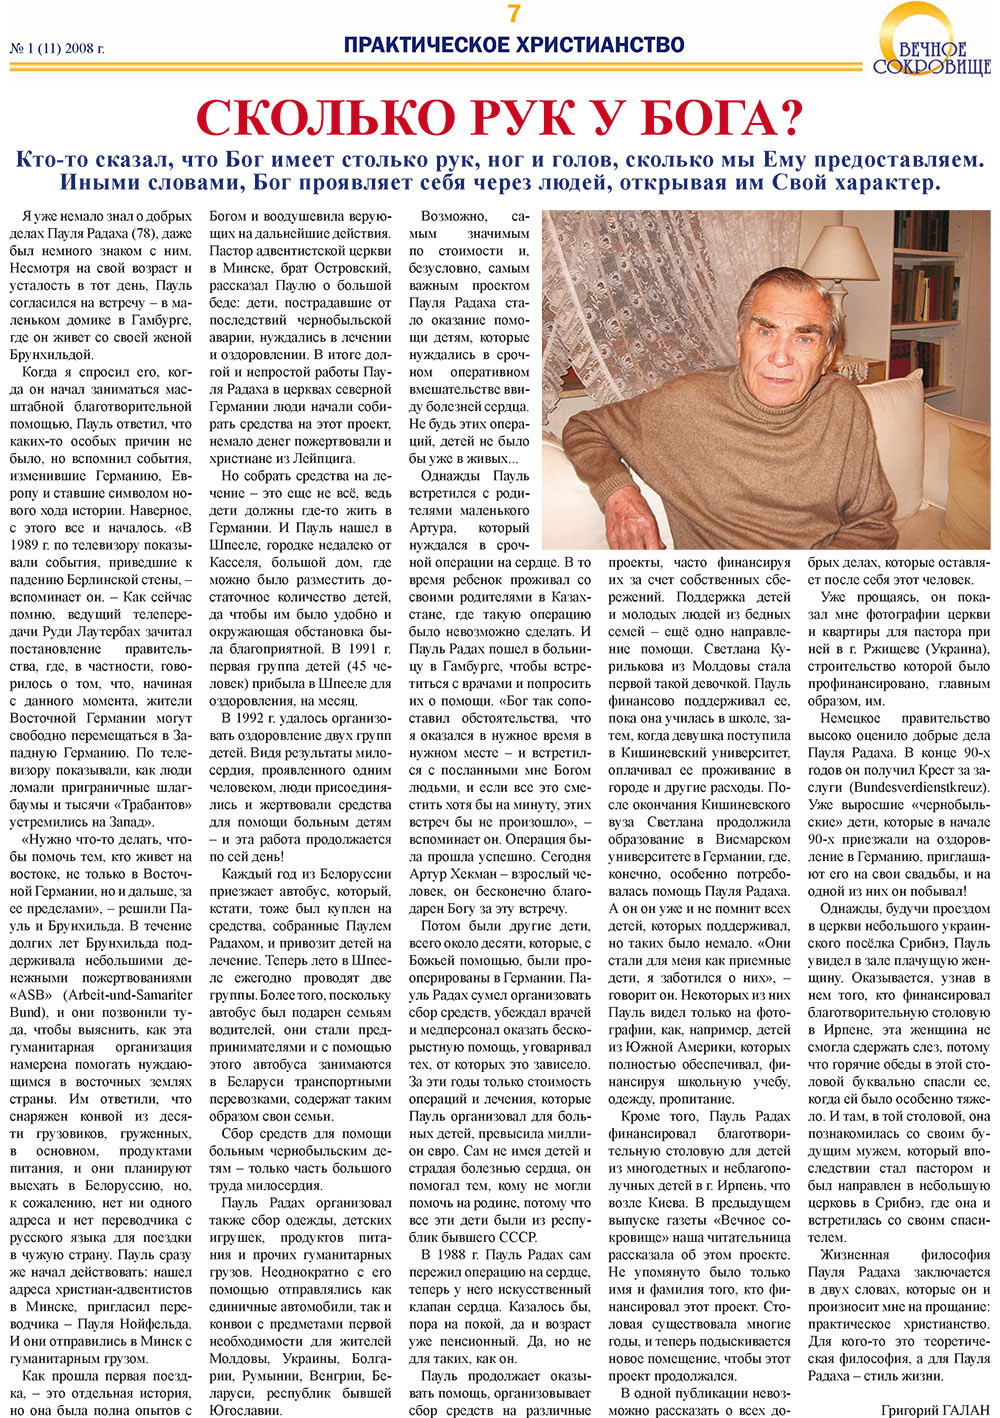 Вечное сокровище, газета. 2008 №1 стр.7